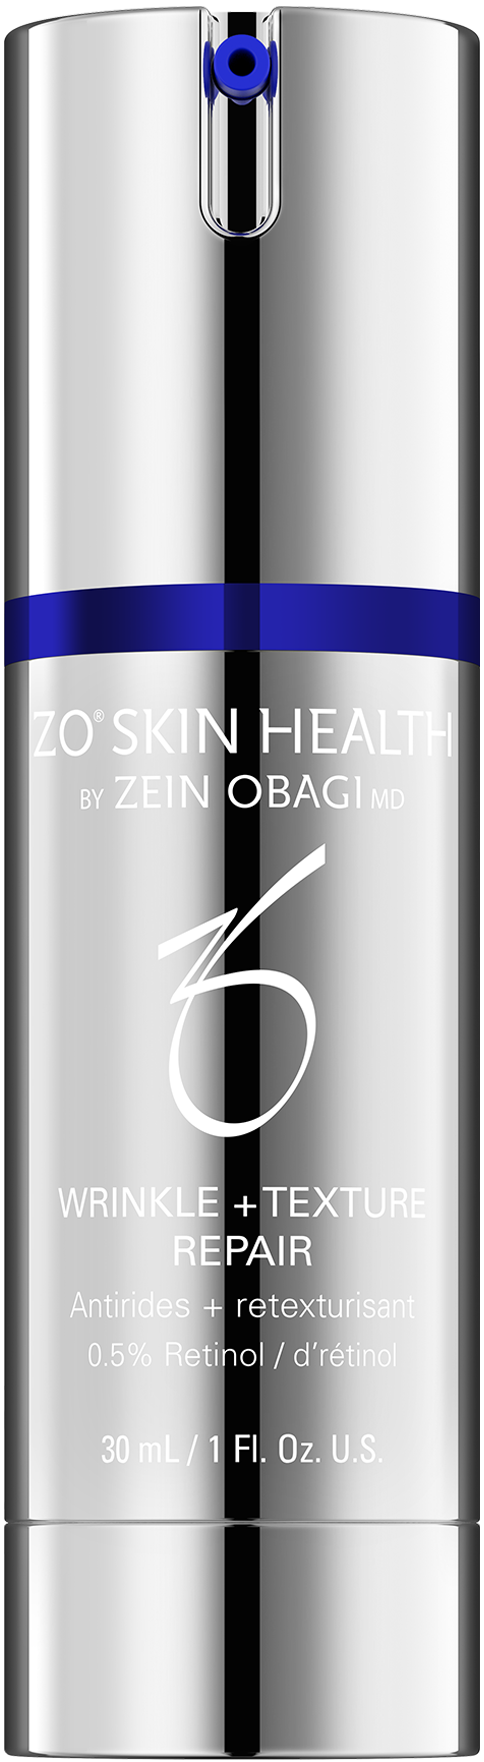 Zo Skin Health - Wrinkle + Texture Repair (formerly RetamaxTM)